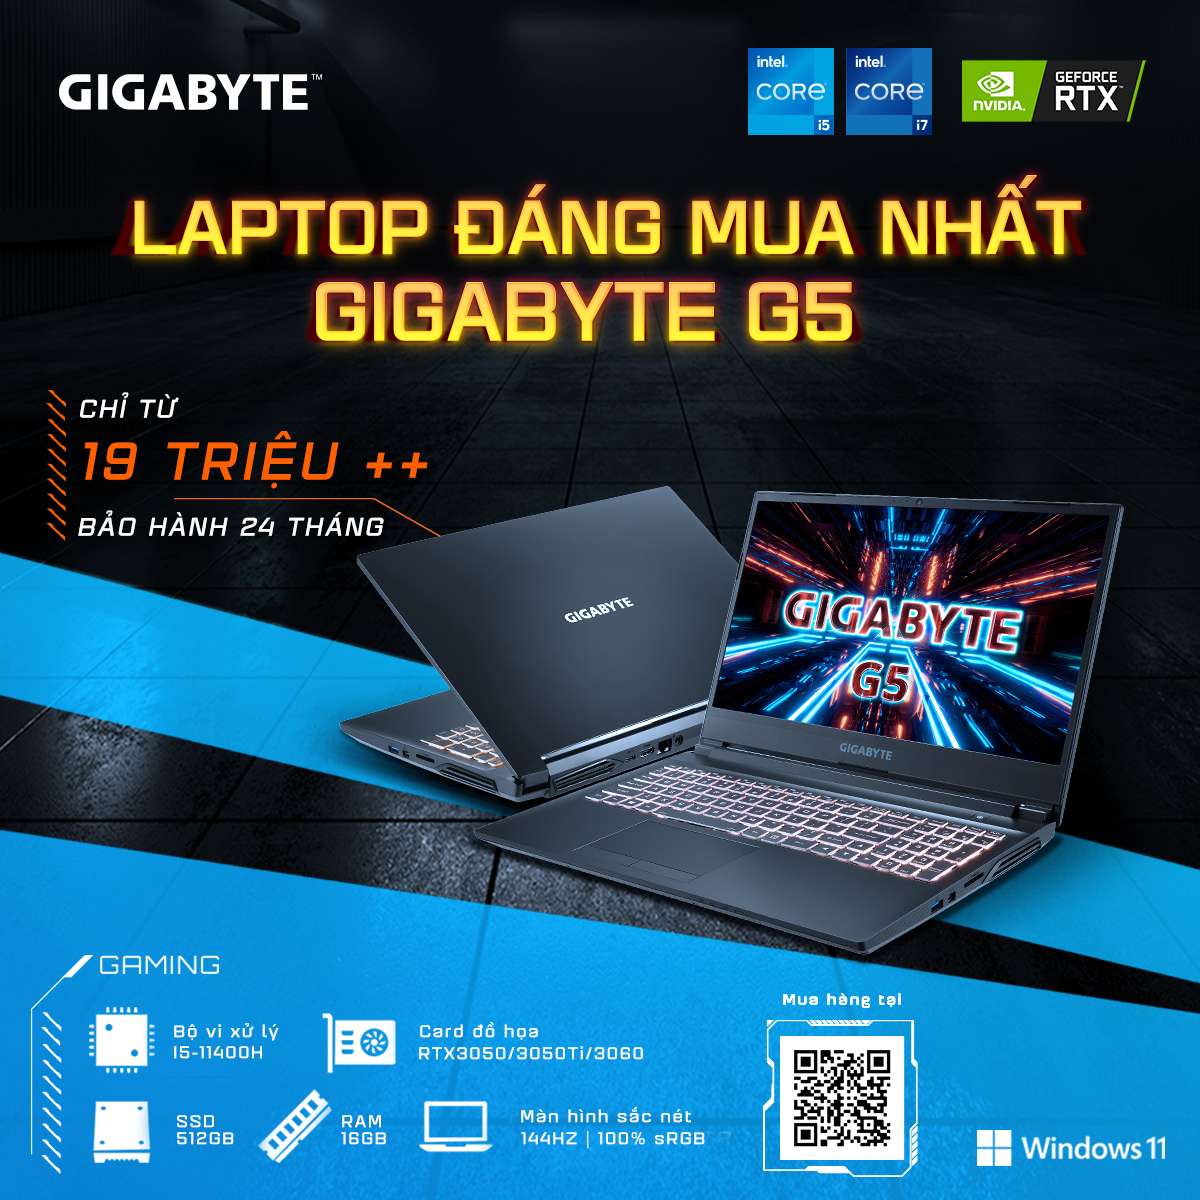 Chương trình khuyến mại giảm giá sốc laptop Gigabyte